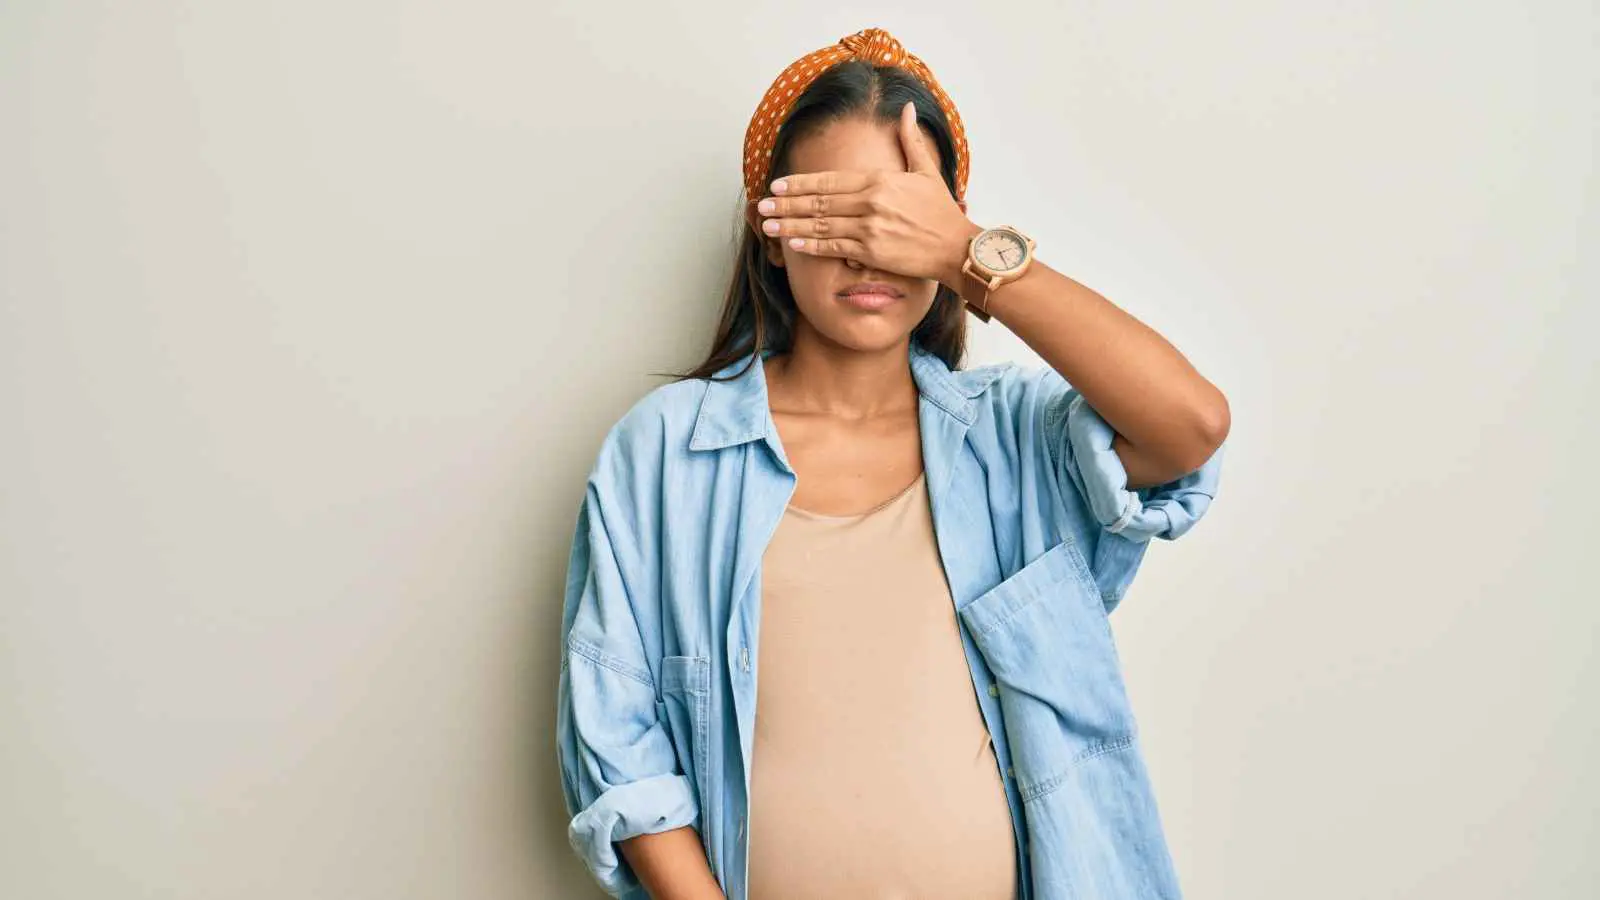 ما مشاكل الرؤية التي تواجهها المرأة الحامل؟